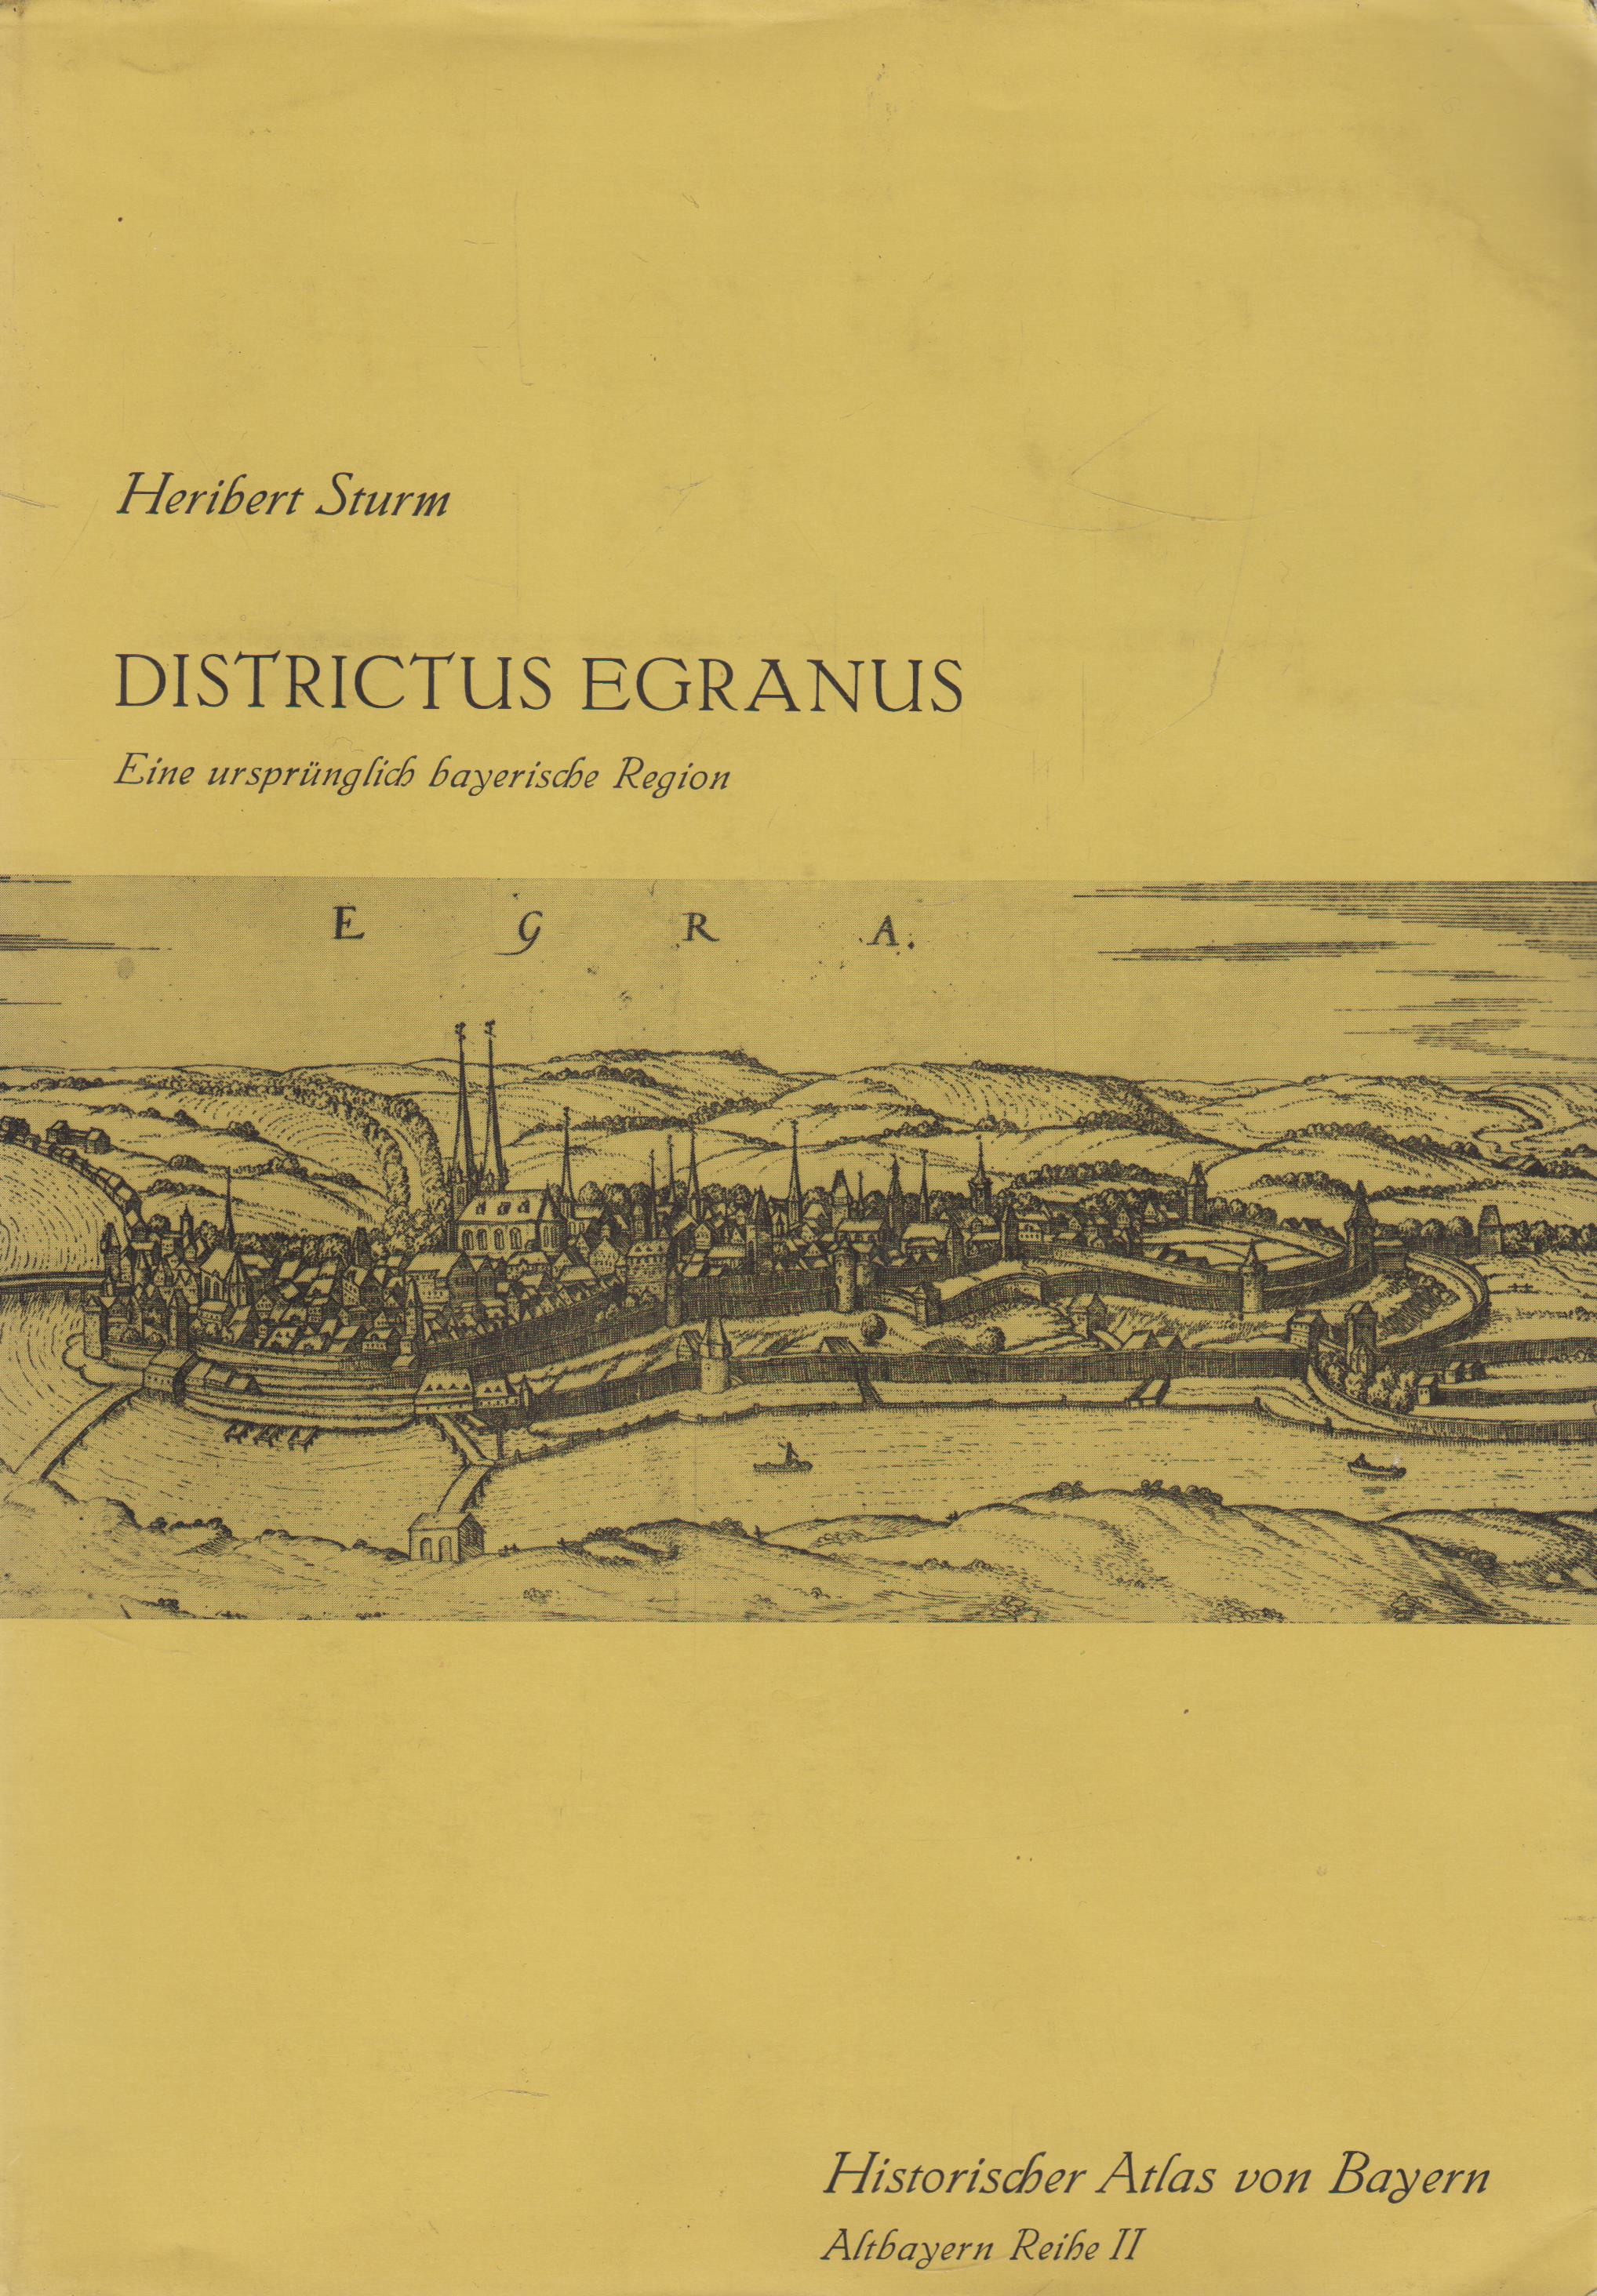 Districtus Egranus Historischer Atlas von Bayern, Teil Altbayern Reihe II Heft 2 - Sturm, Heribert